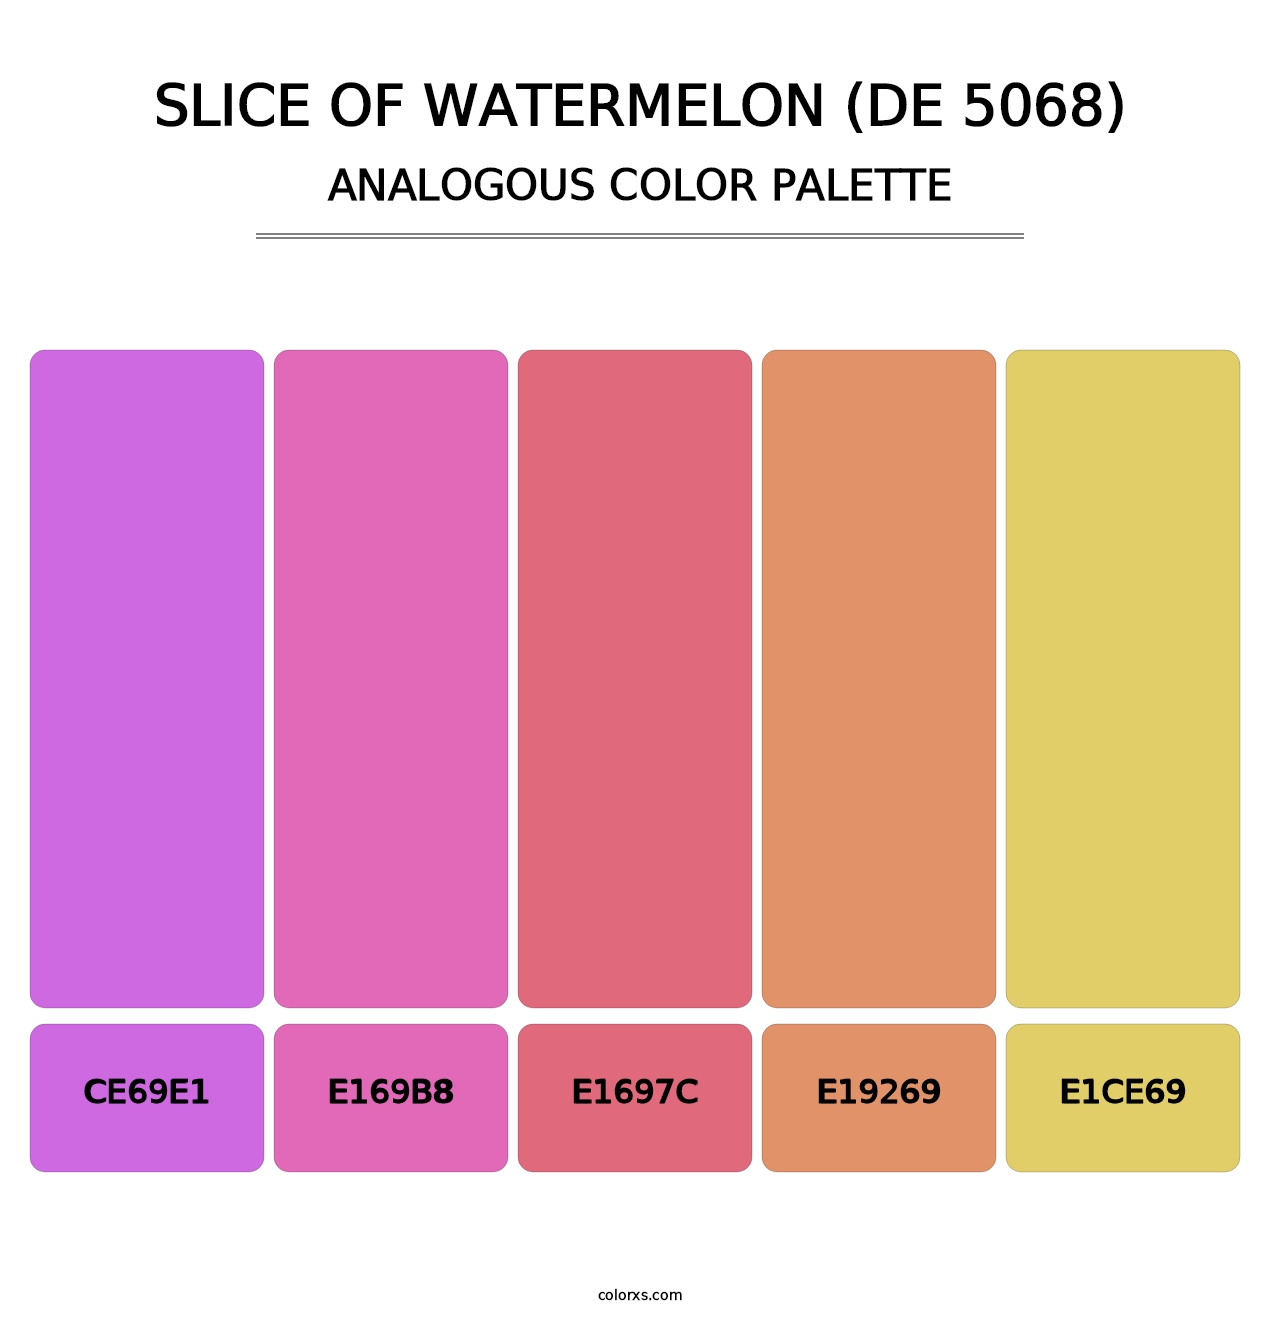 Slice of Watermelon (DE 5068) - Analogous Color Palette